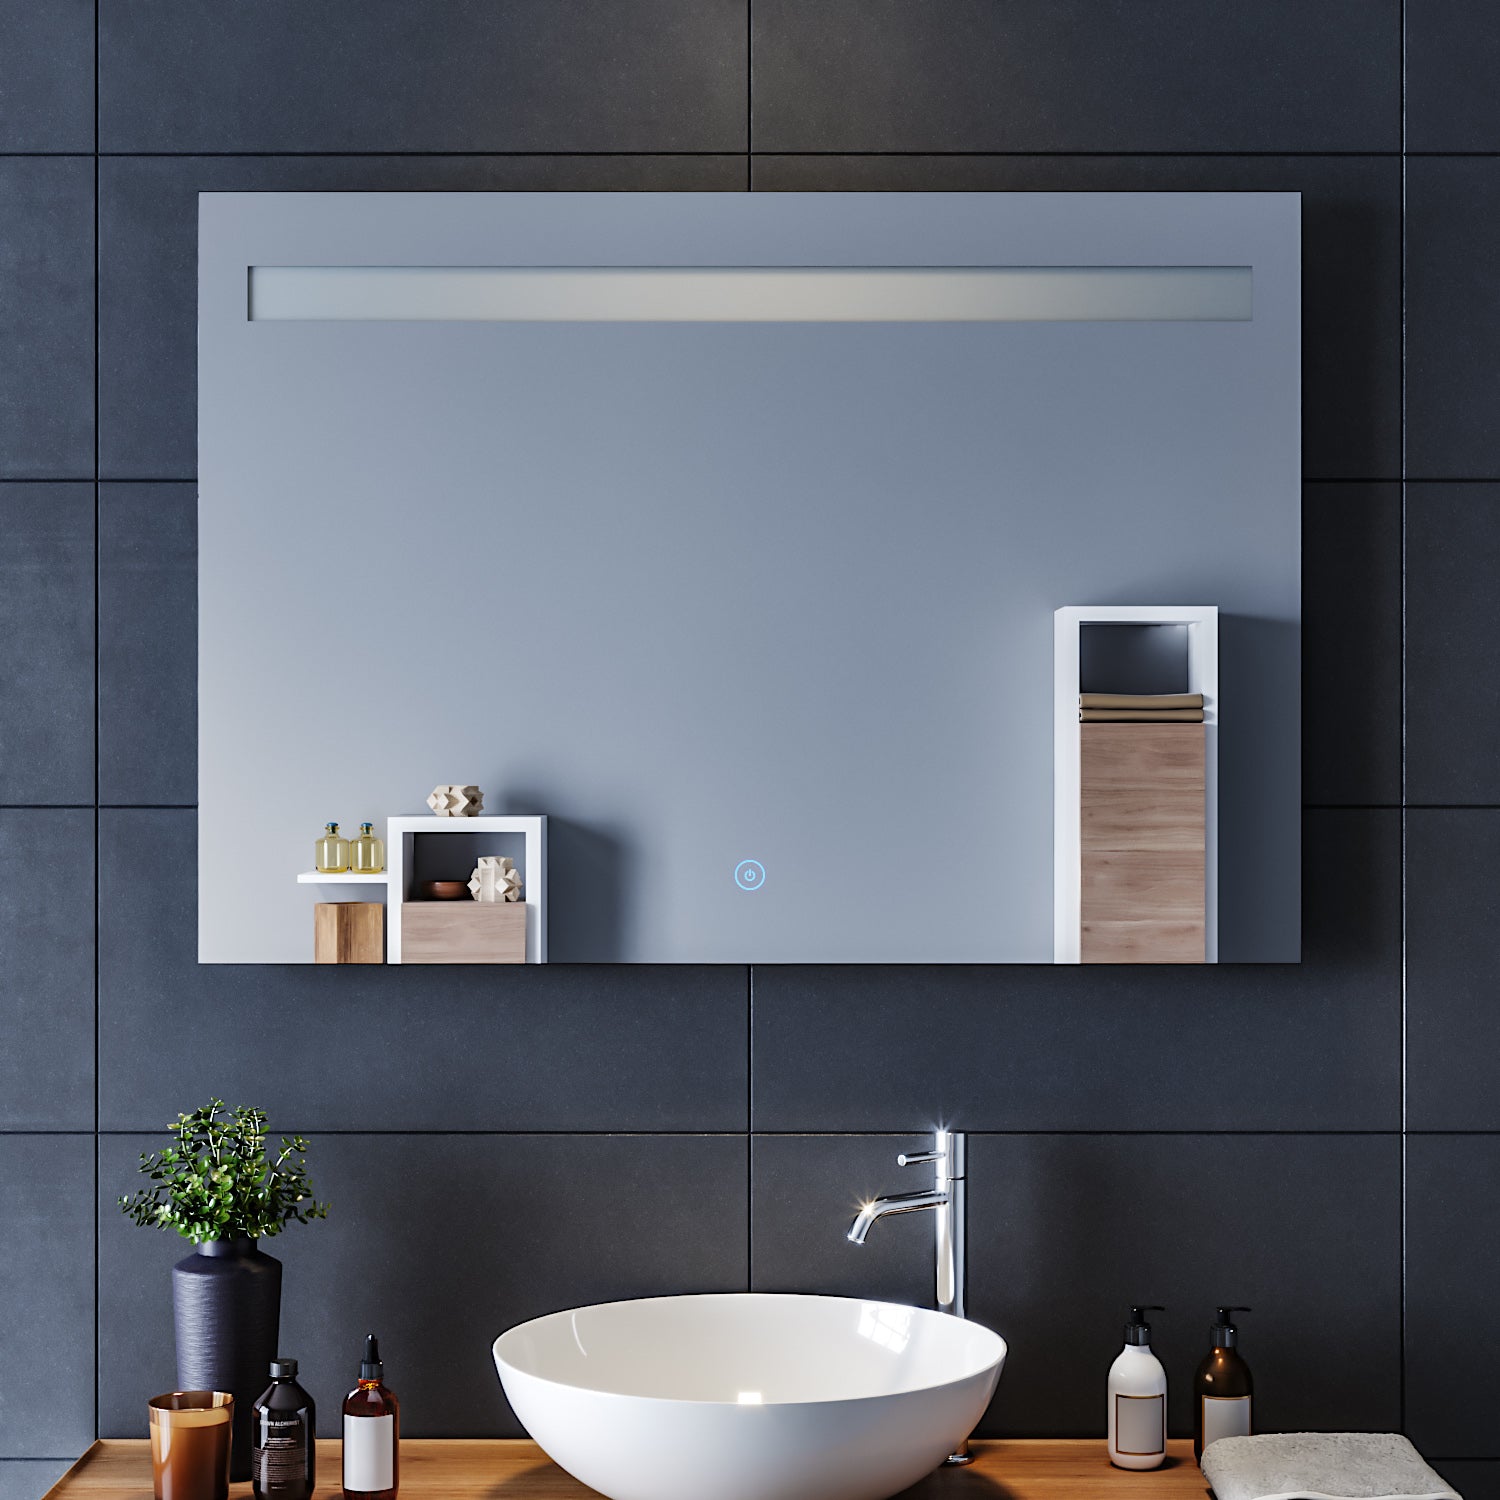 Éclairage avant miroir LED, intérieur 180° haut et bas réglage de l'angle  de salle de bain miroir lampe lanterne murale pour armoire miroir salle de  bain coiffeuse coiffeuse miroir avant lumière 